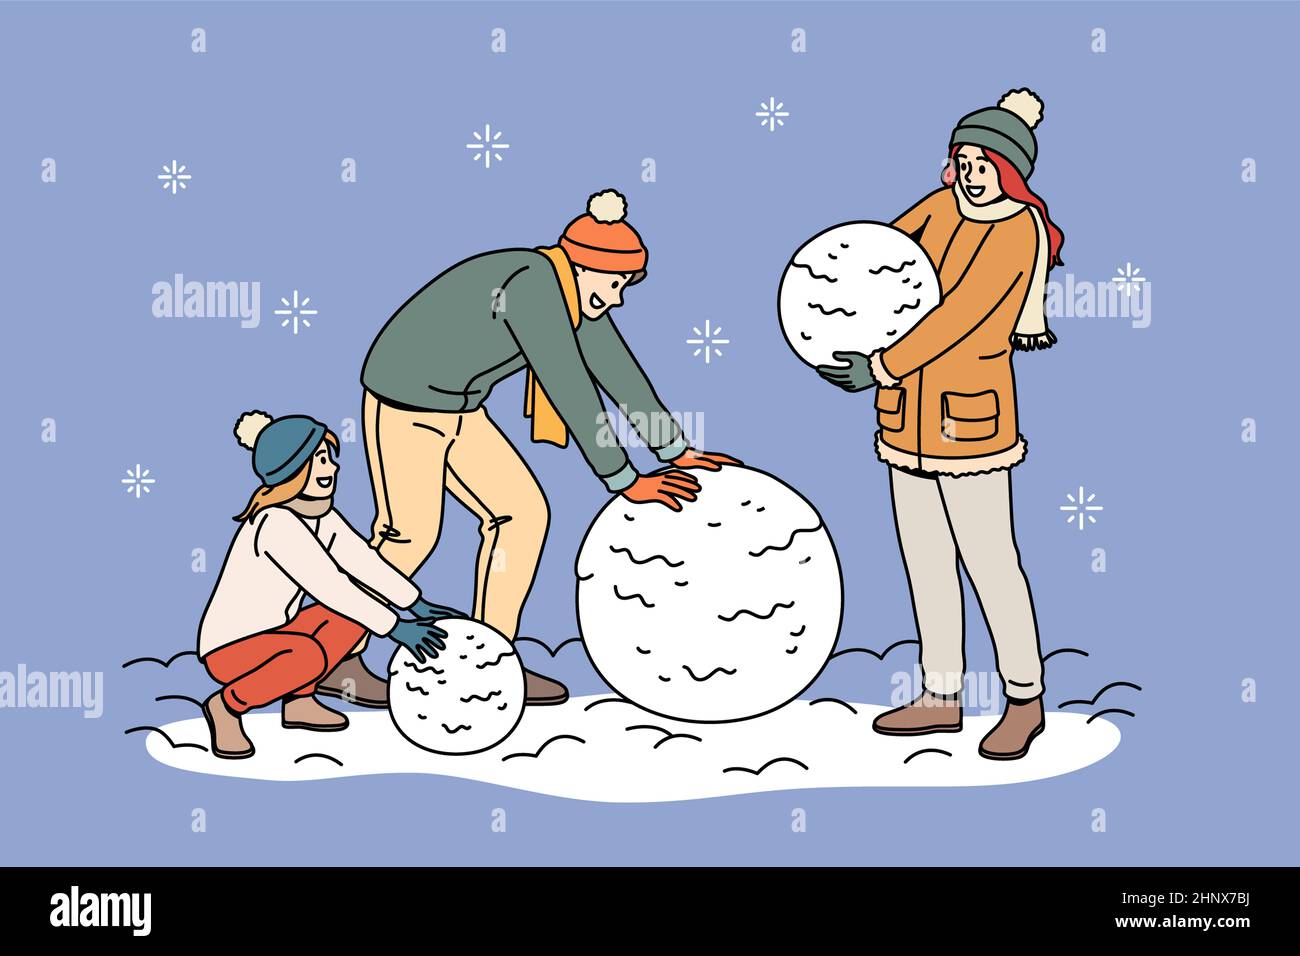 Activités de loisirs en hiver pour un concept familial. Famille heureuse avec fille portant des vêtements chauds boules de neige roulantes ayant plaisir ensemble vecteur illustrateur Banque D'Images